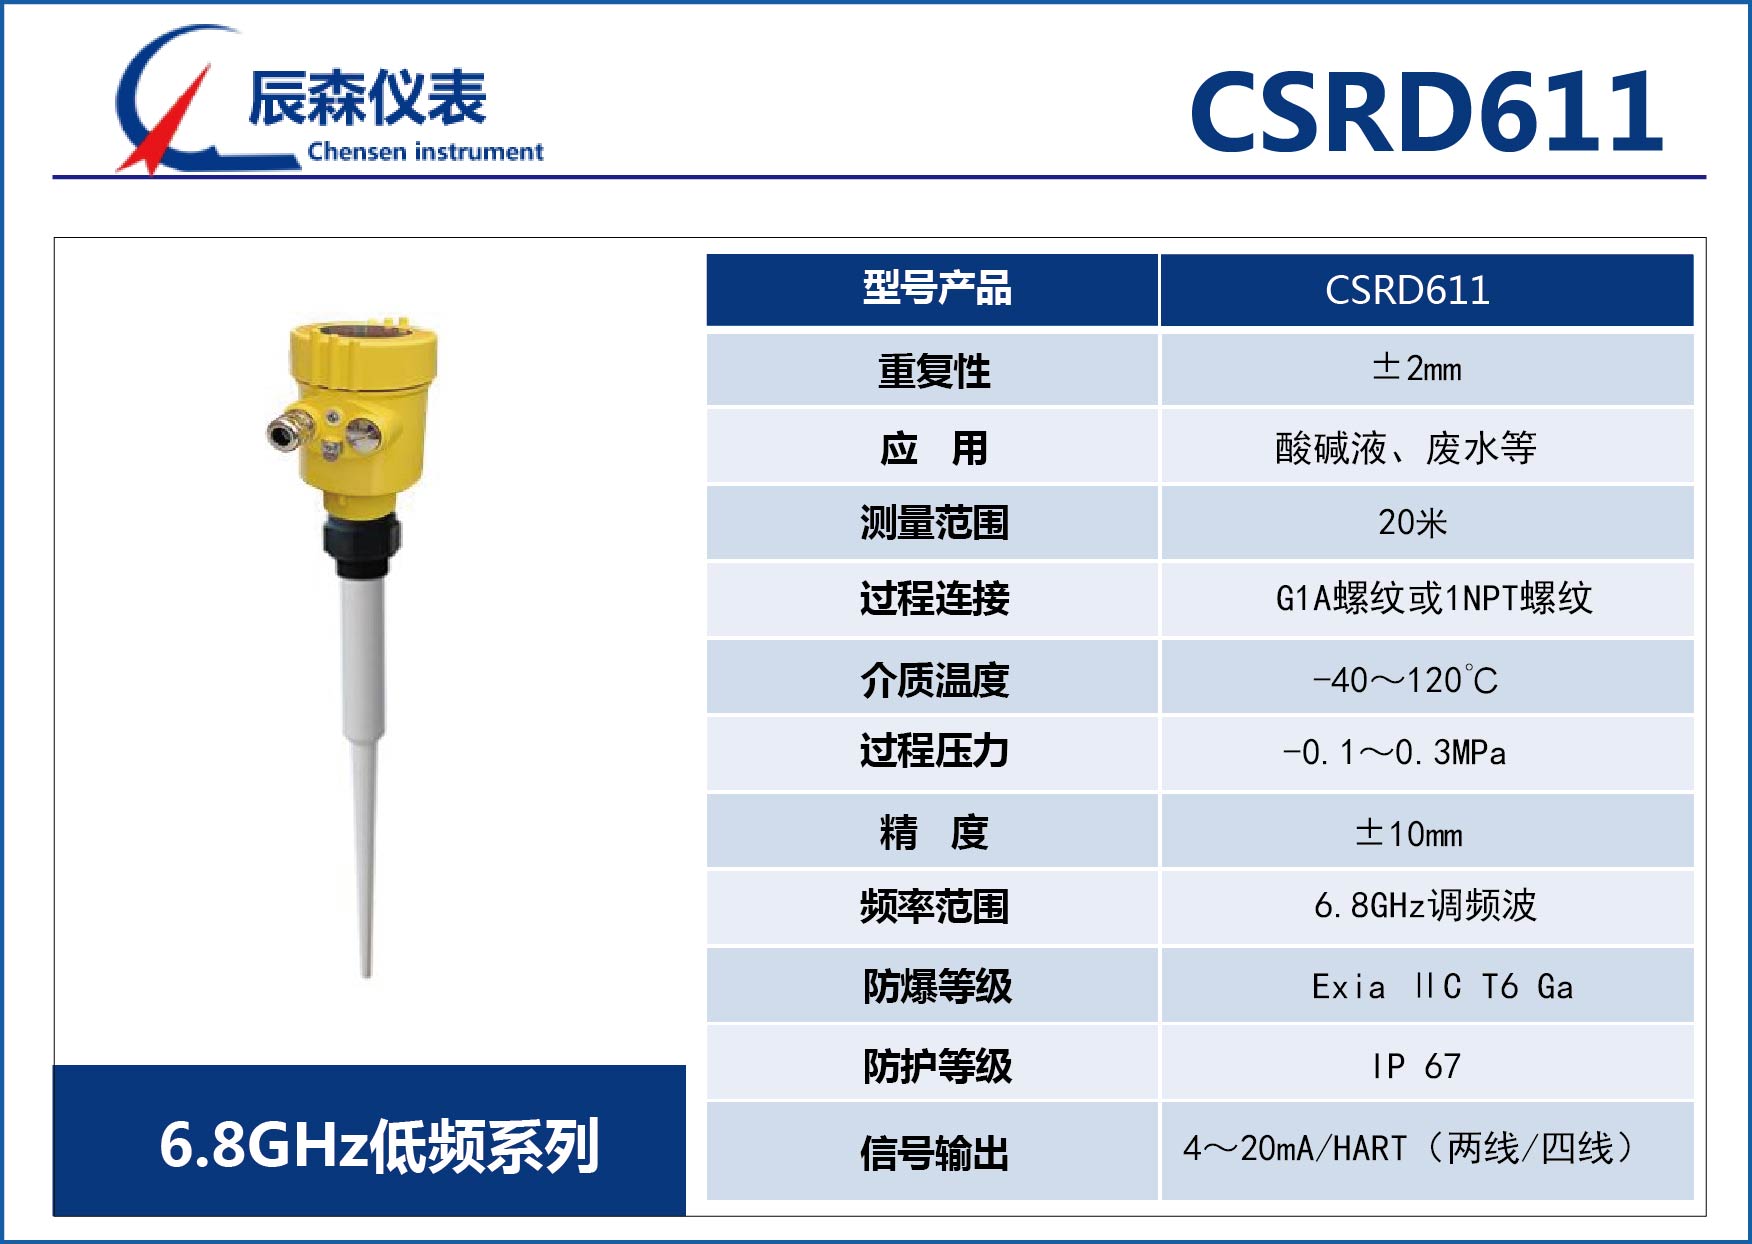 低頻雷達物位計CSRD611